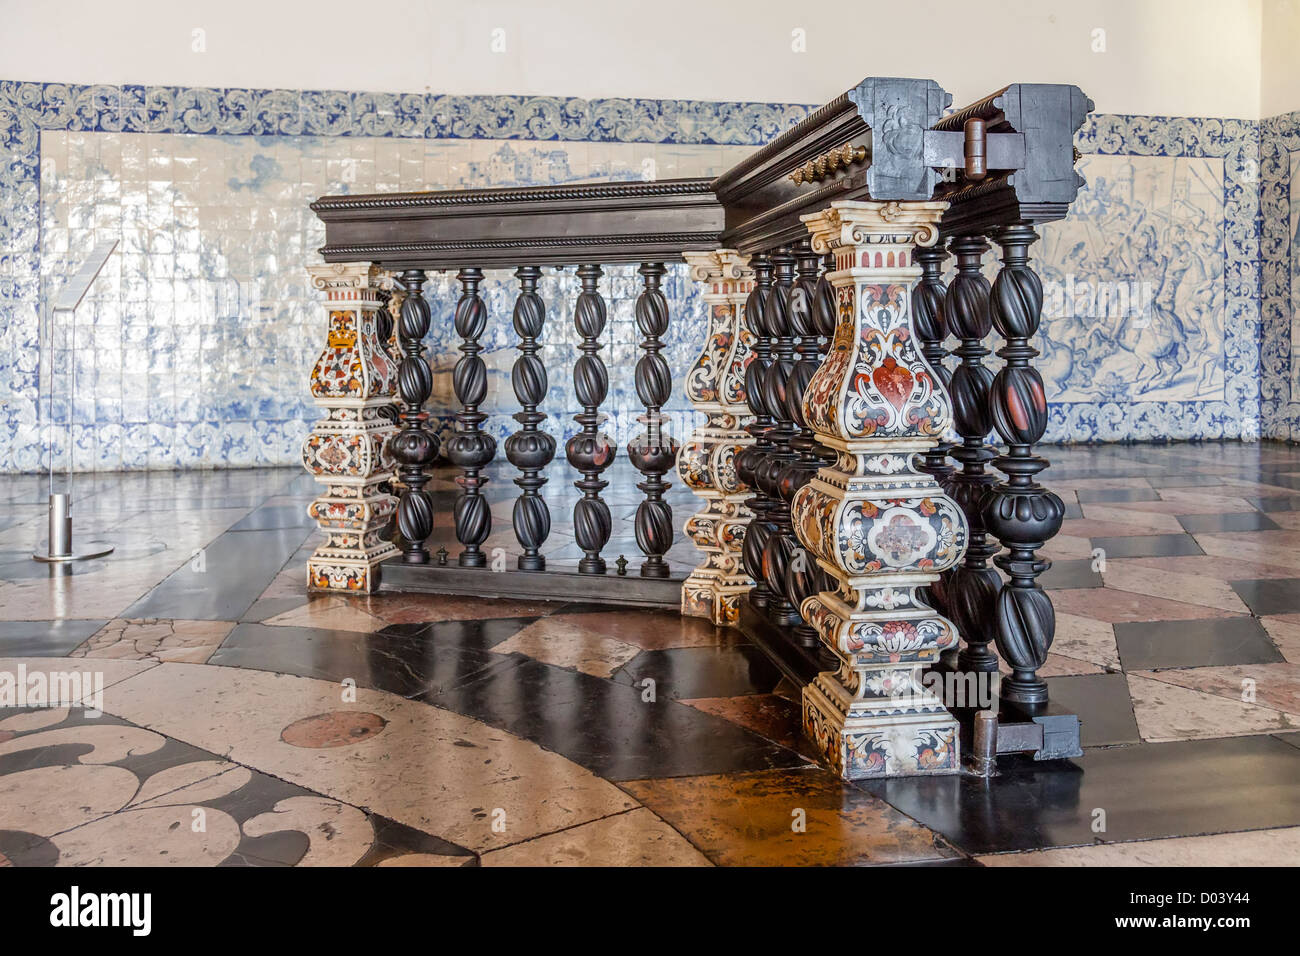 La marqueterie de marbre baroque dans le hall d'entrée (Sala da Portaria) du Monastère de São Vicente de Fora. Lisbonne, Portugal. Banque D'Images